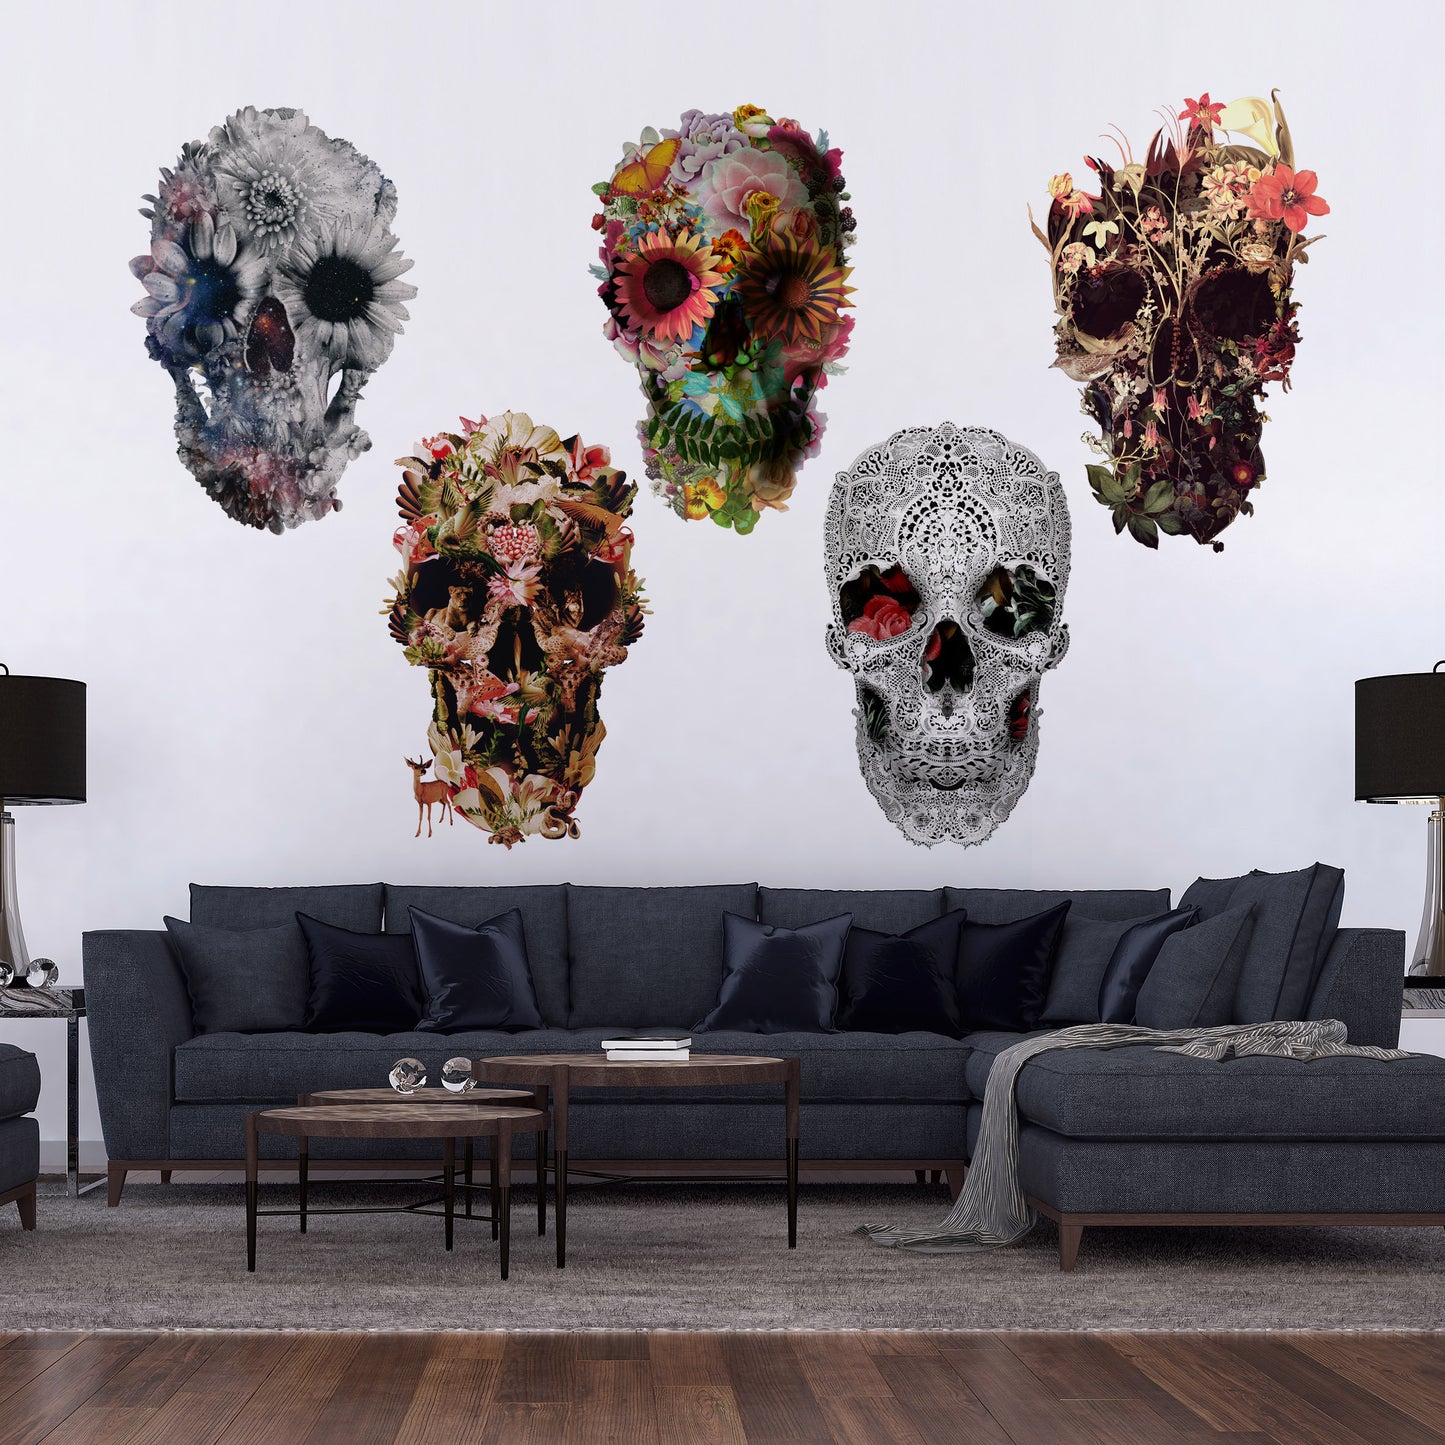 Skull Wall Decal Set, Set Of 5 Floral Skull Wall Sticker, Sugar Skull Wall Art Home Decor, Skull Wall Art Gift, Boho Flower Skull Wall Decal